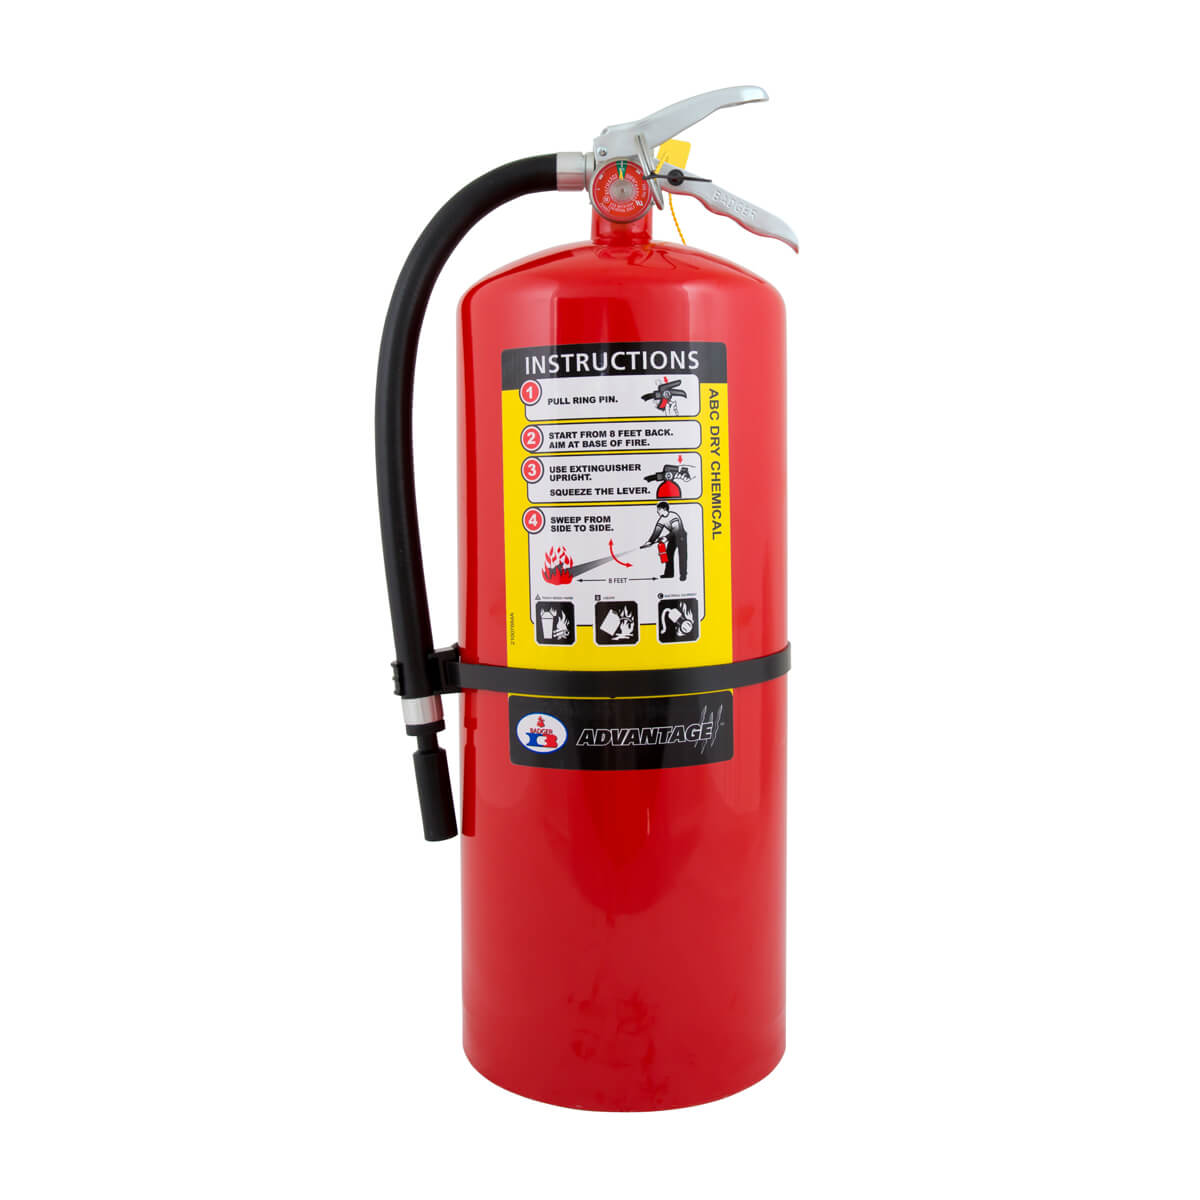 Badger Advantage Fire Extinguisher - 20 lb 6-A:80-B:C